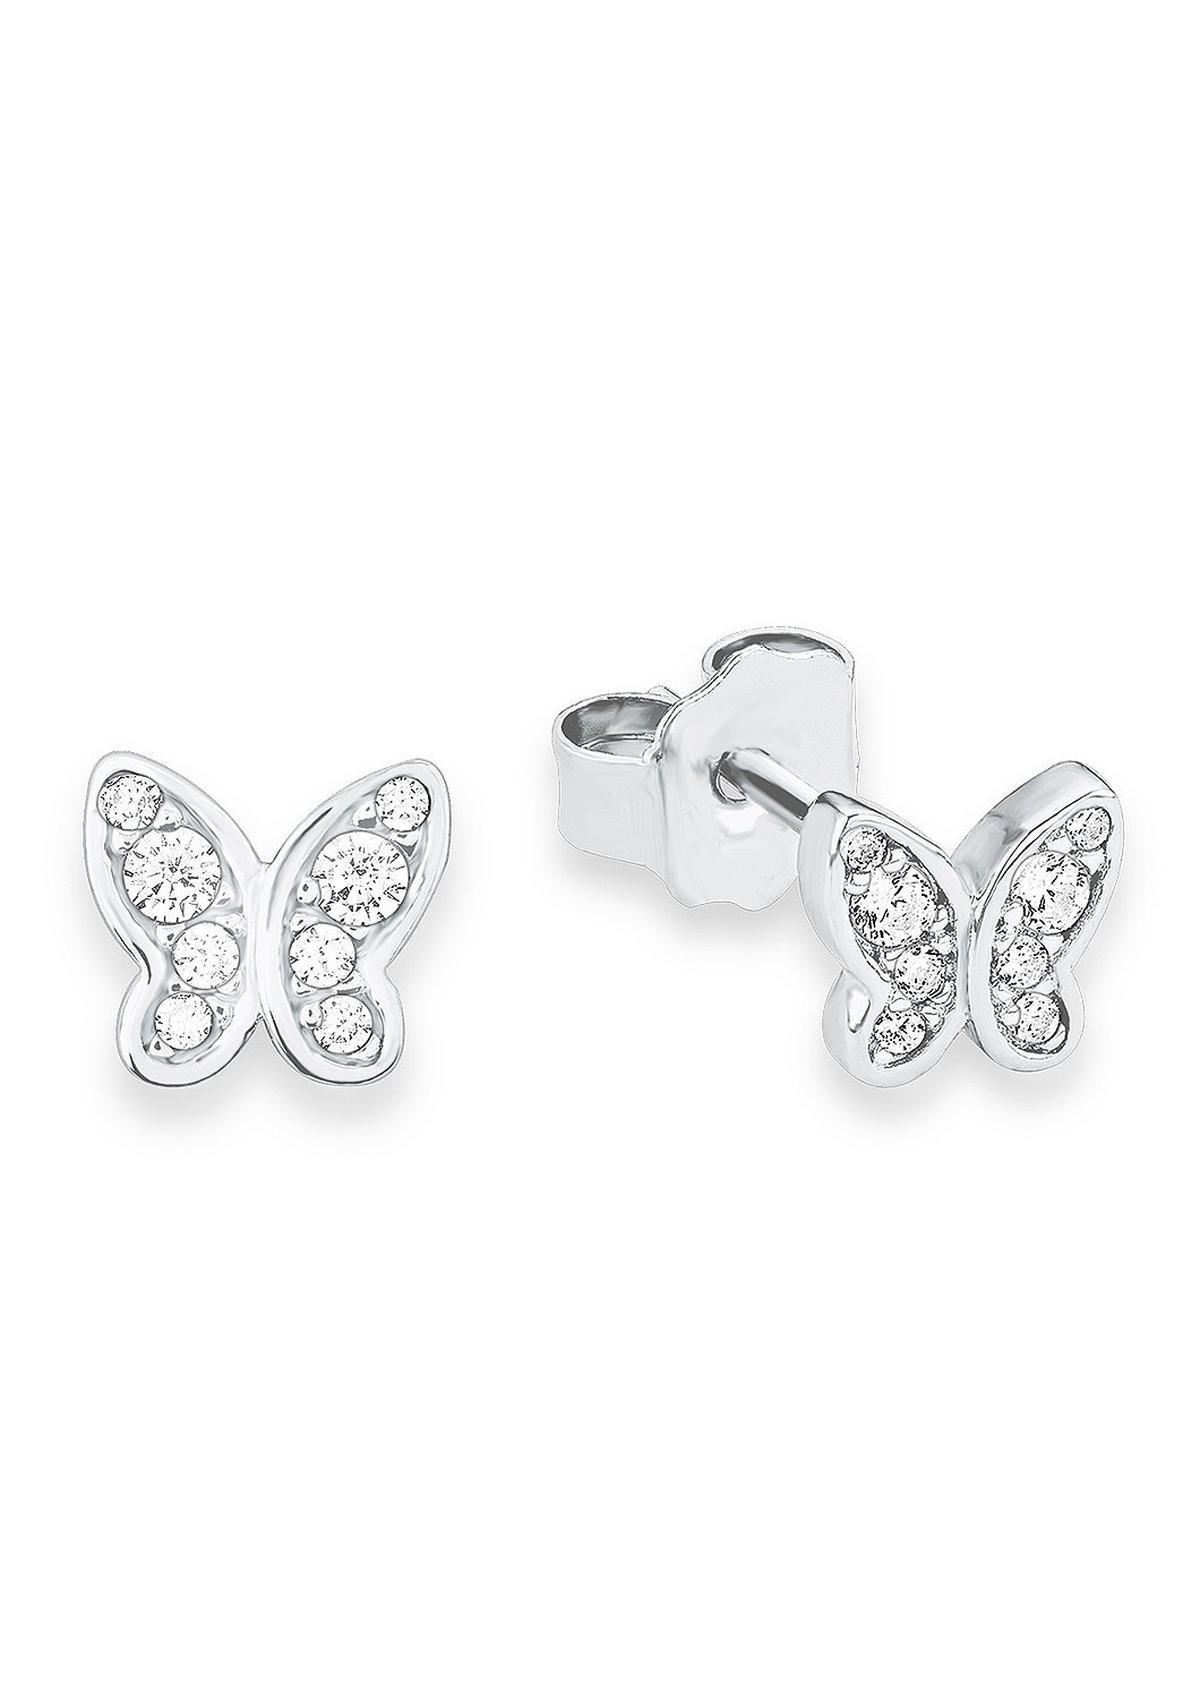 Schmetterling-Ohrringe aus Silber - silber